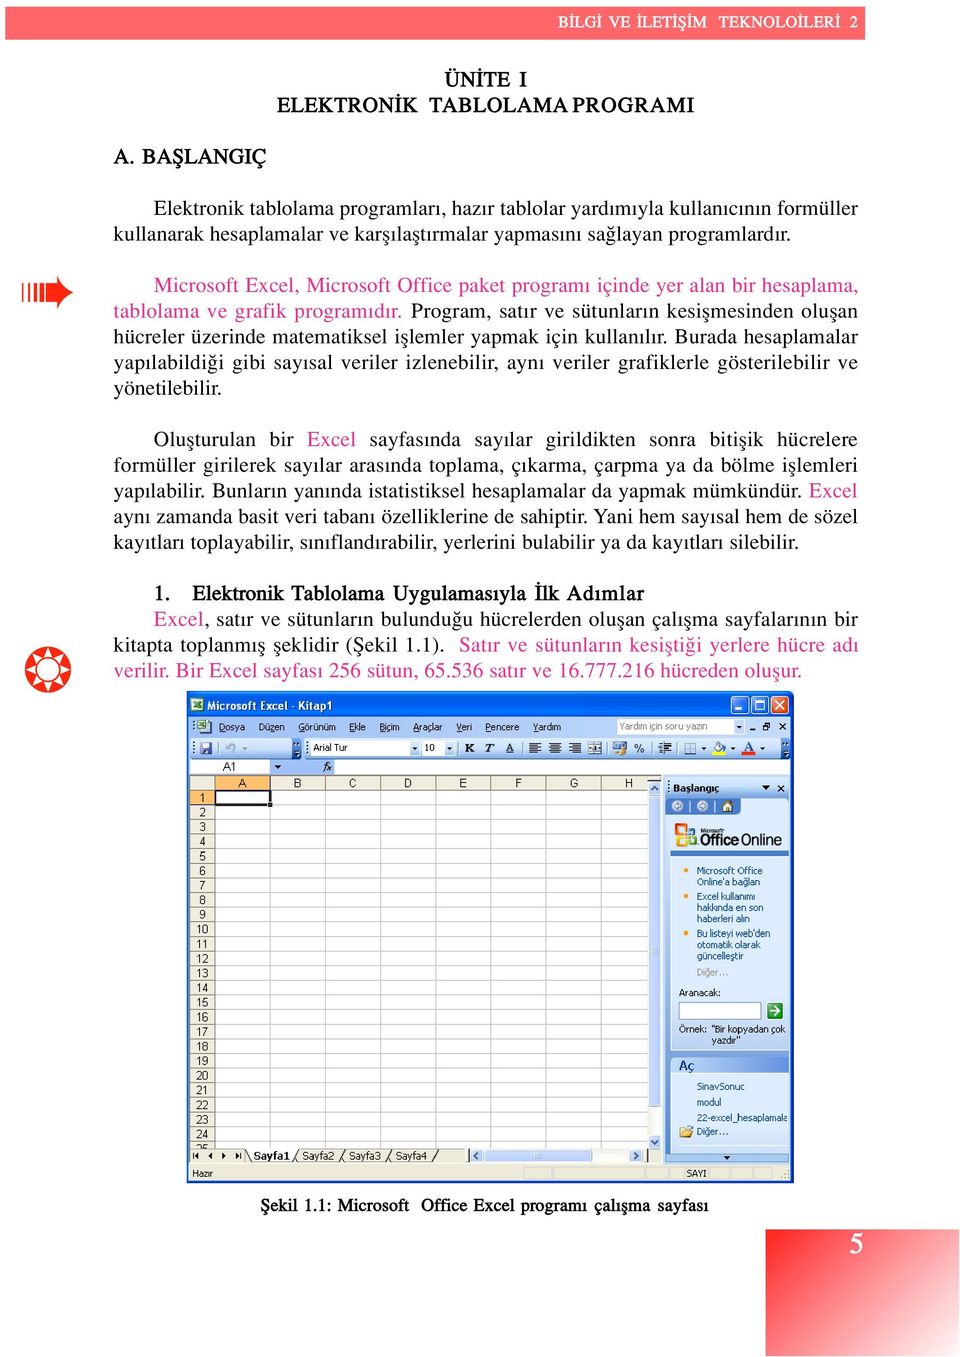 Microsoft Excel, Microsoft Office paket program içinde yer alan bir hesaplama, tablolama ve grafik program d r.